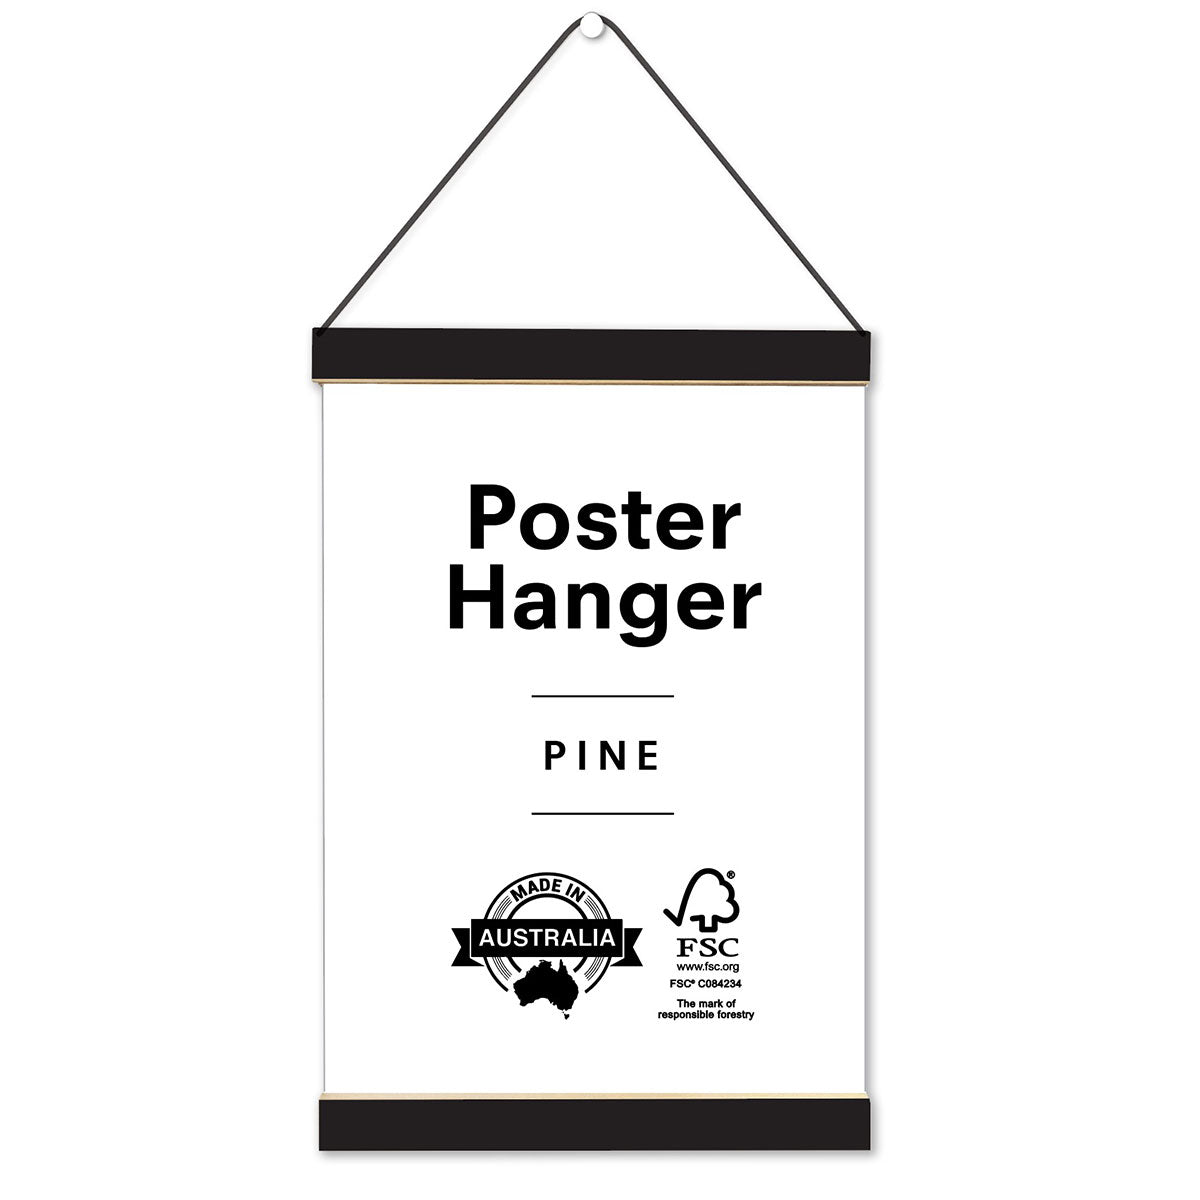 Poster hanger in Australian Pine, Black Colour